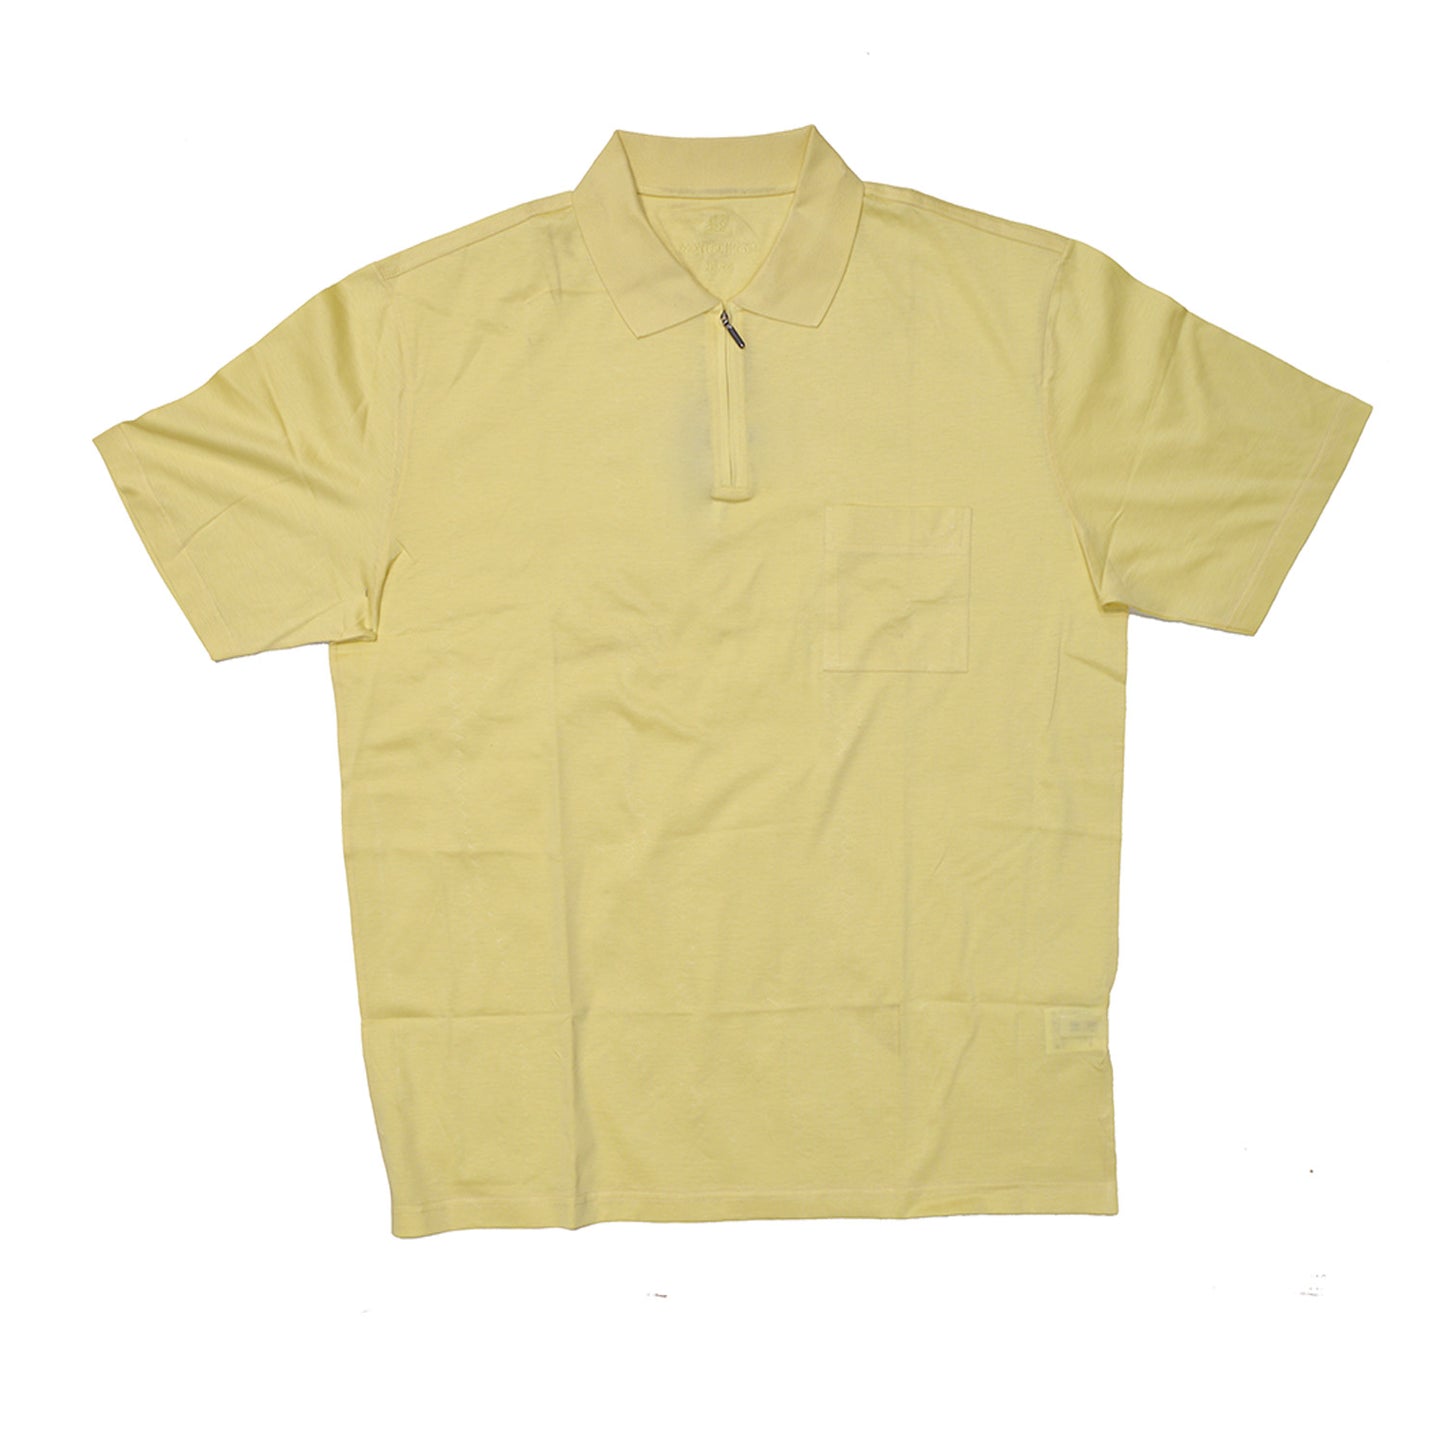 Montechiaro Half Zip Polo Shirt